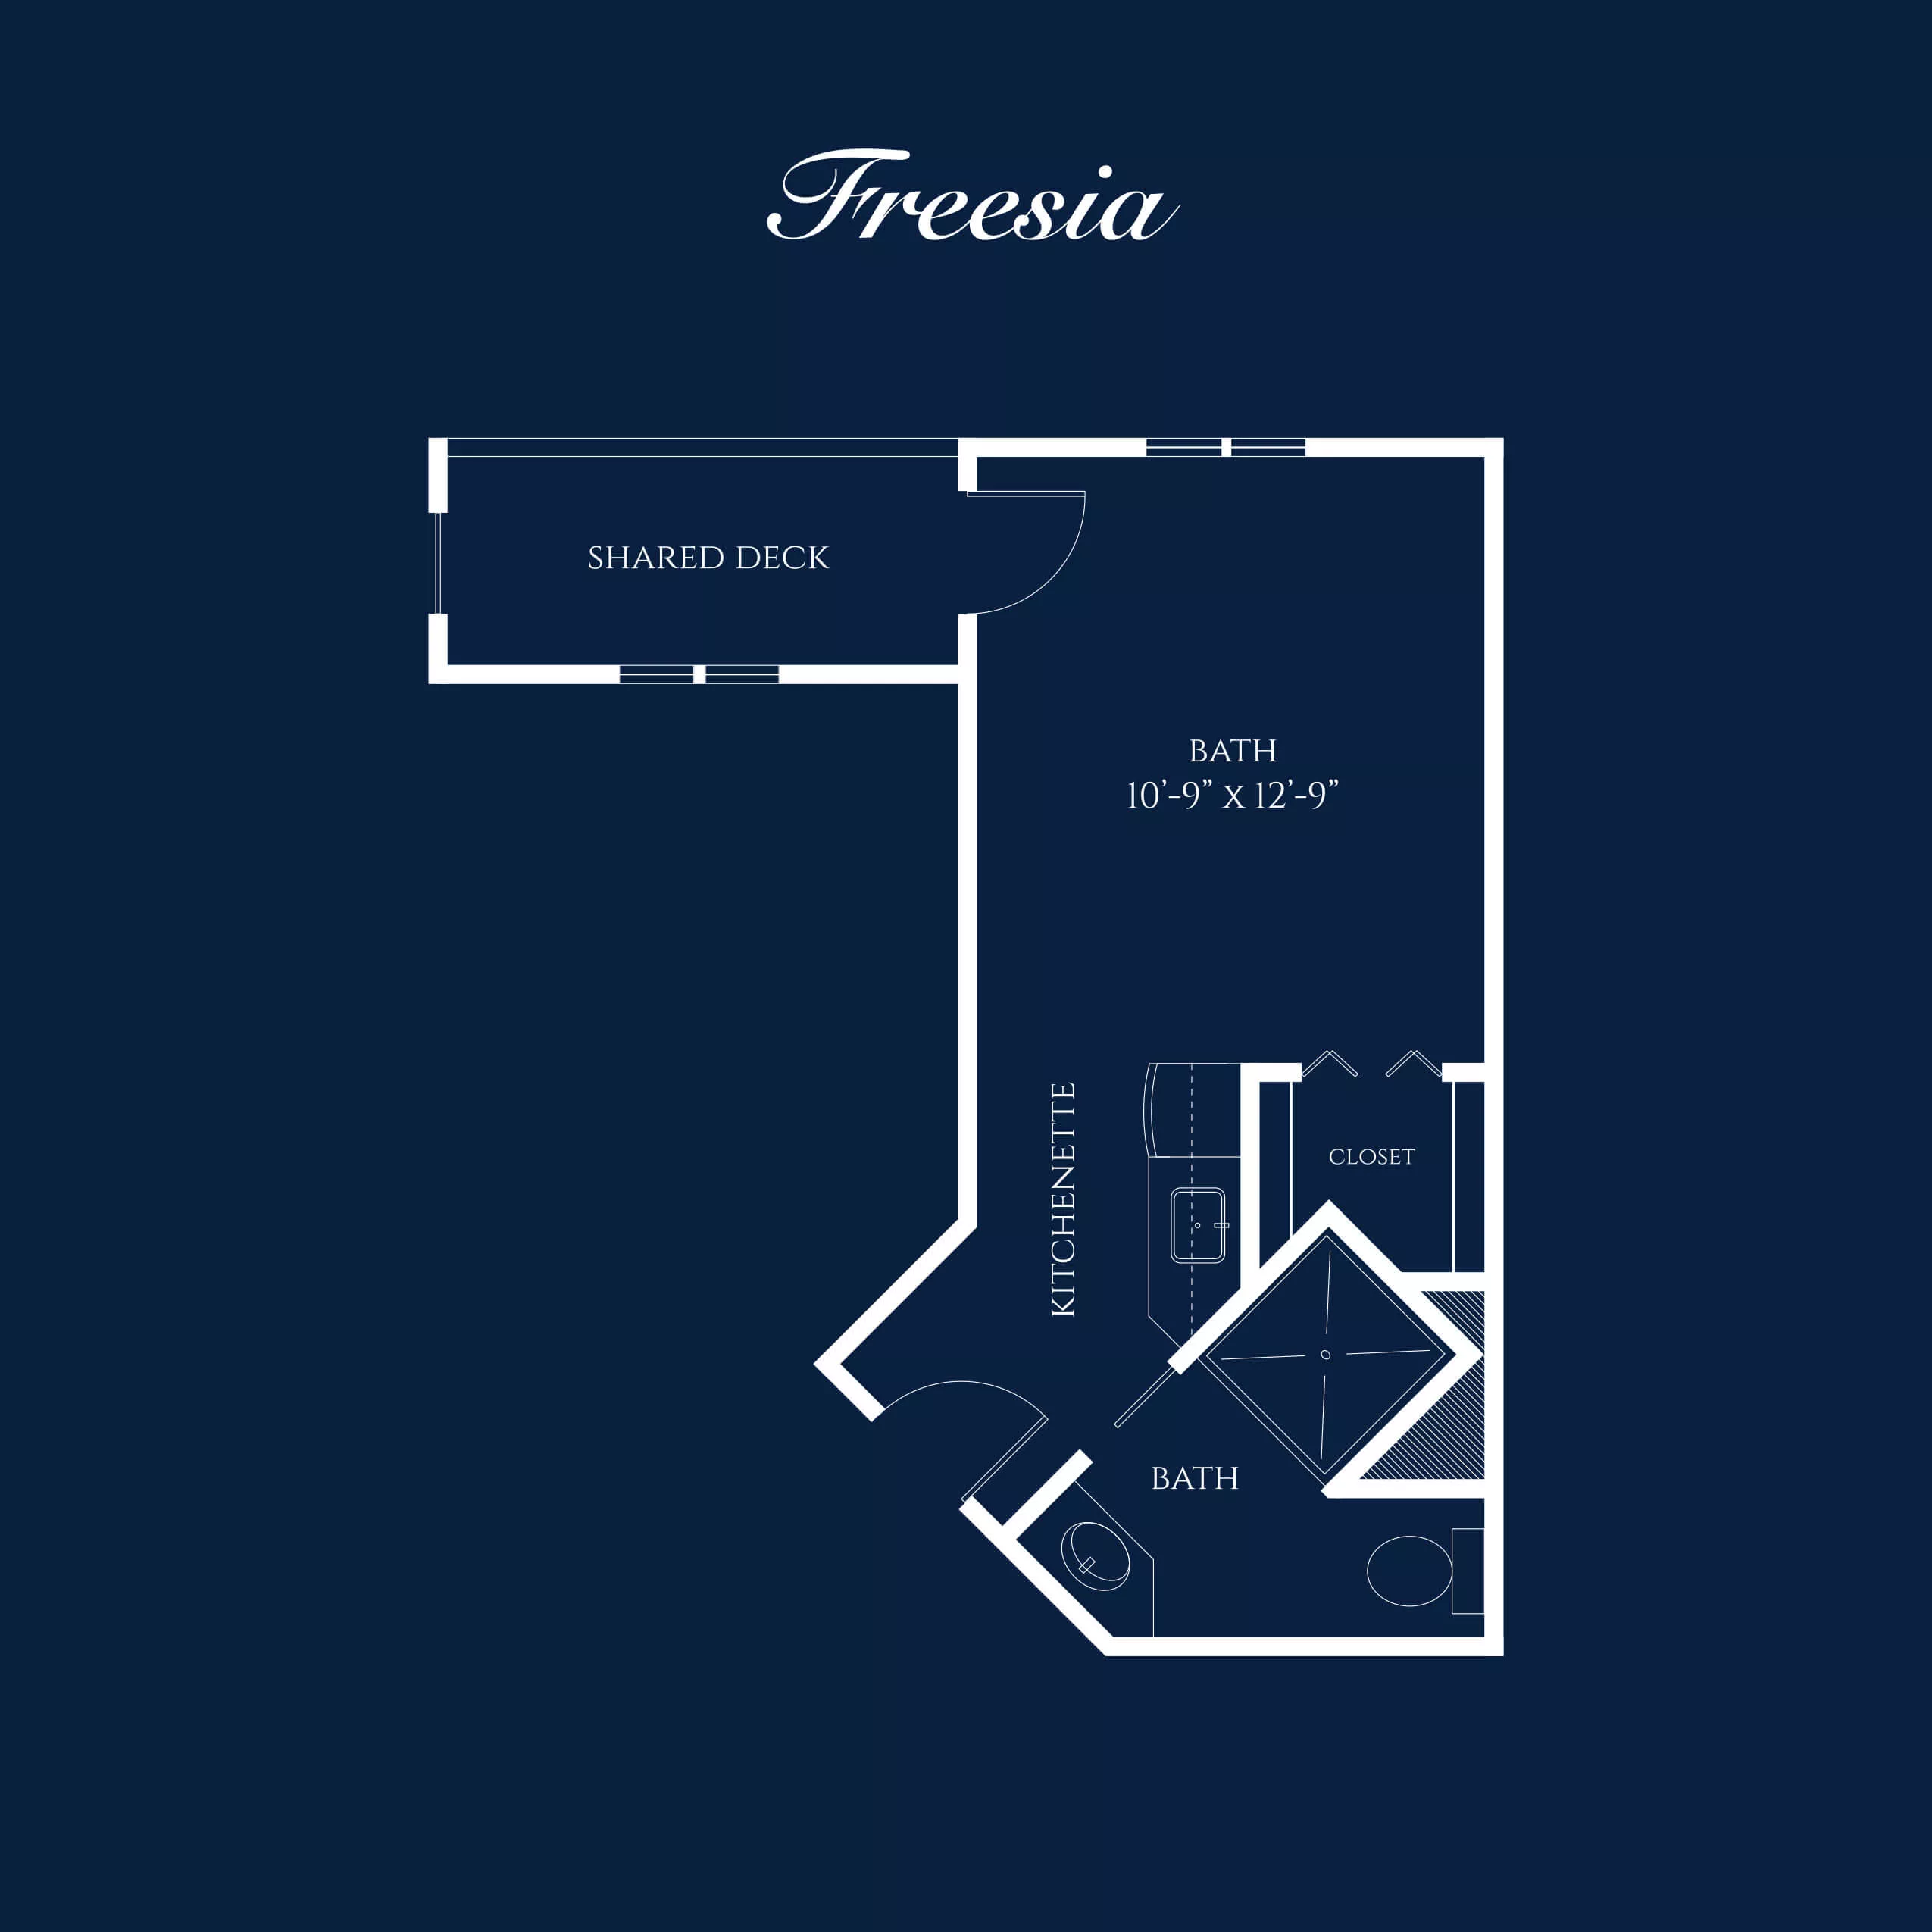 Floorplan of Freesia guestroom